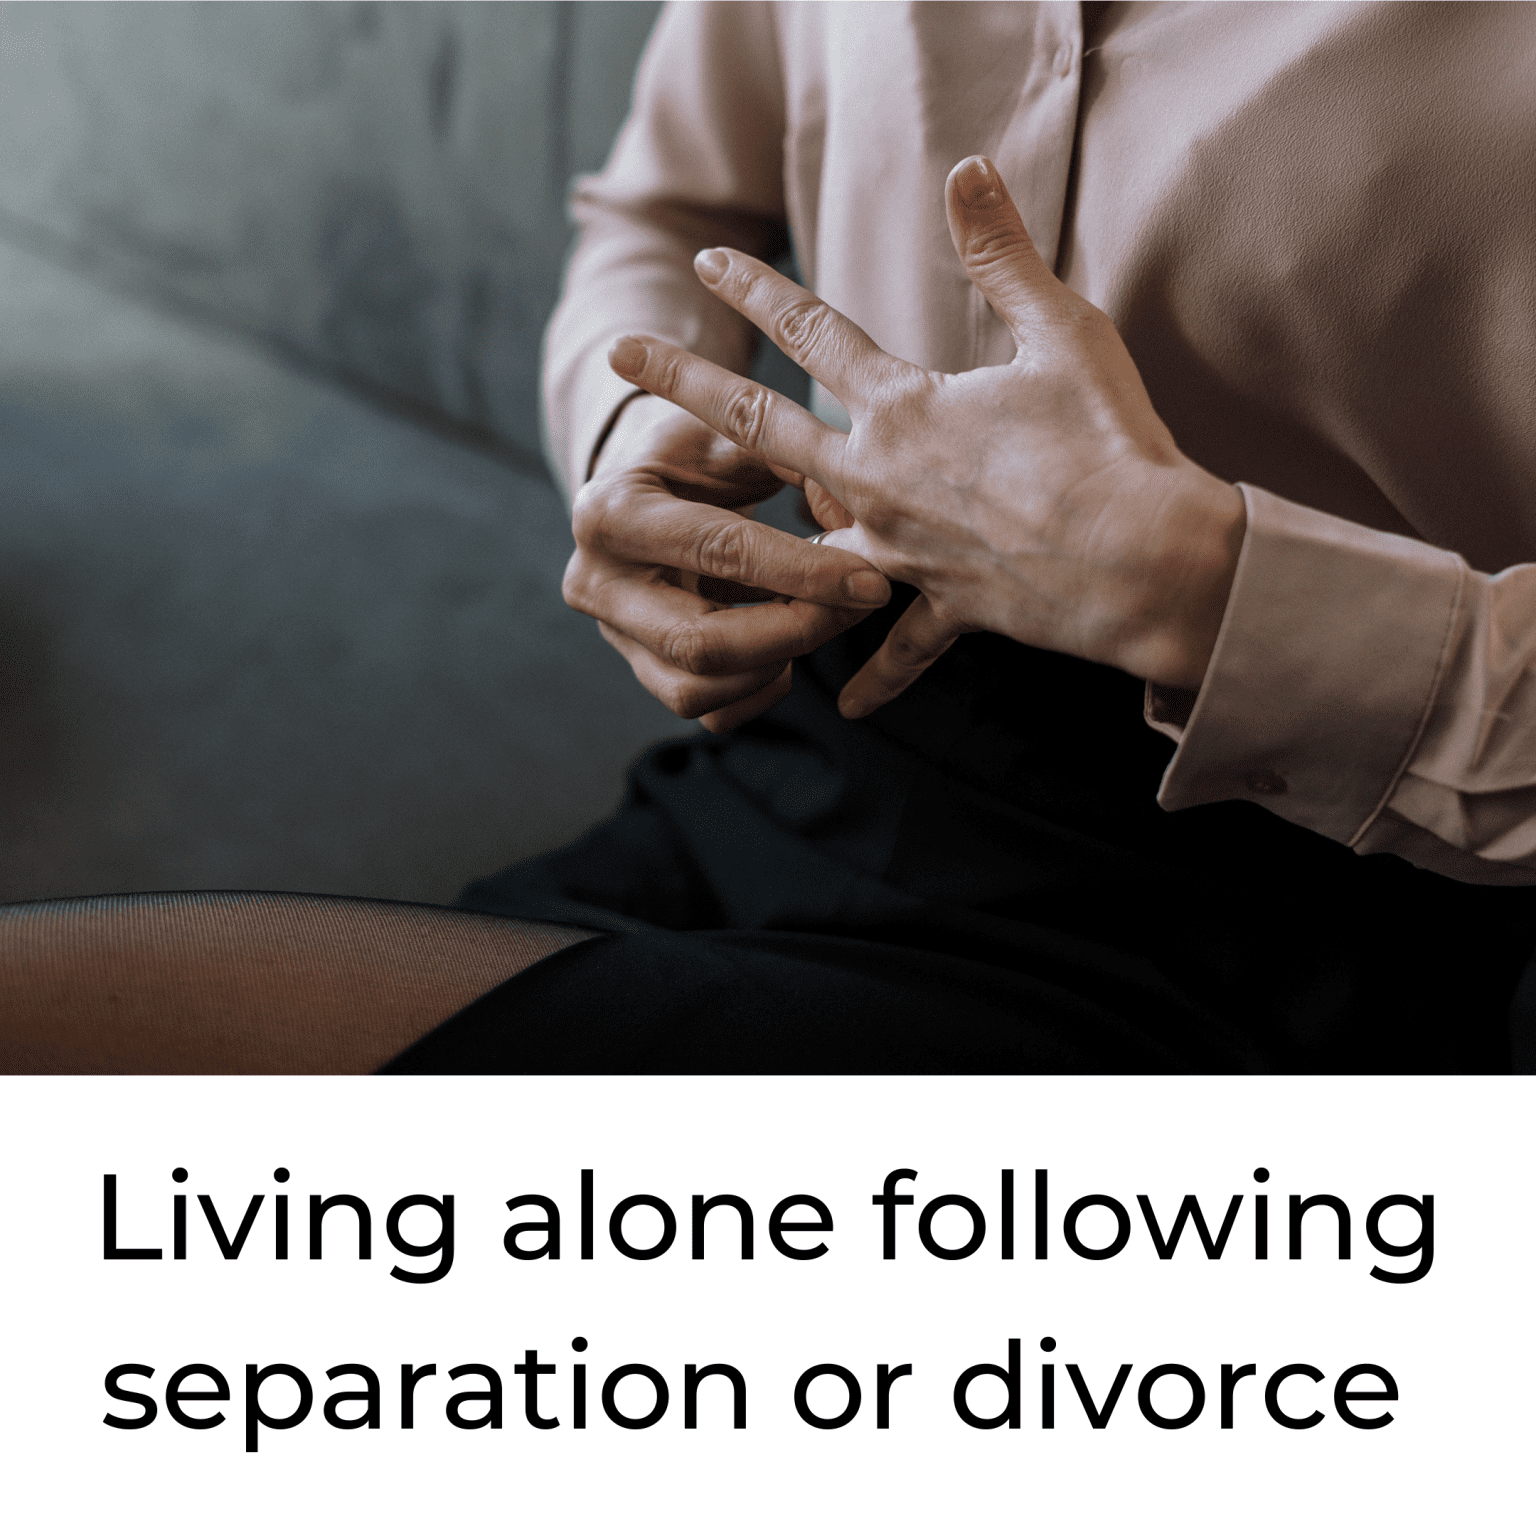 living alone after divorce or separation